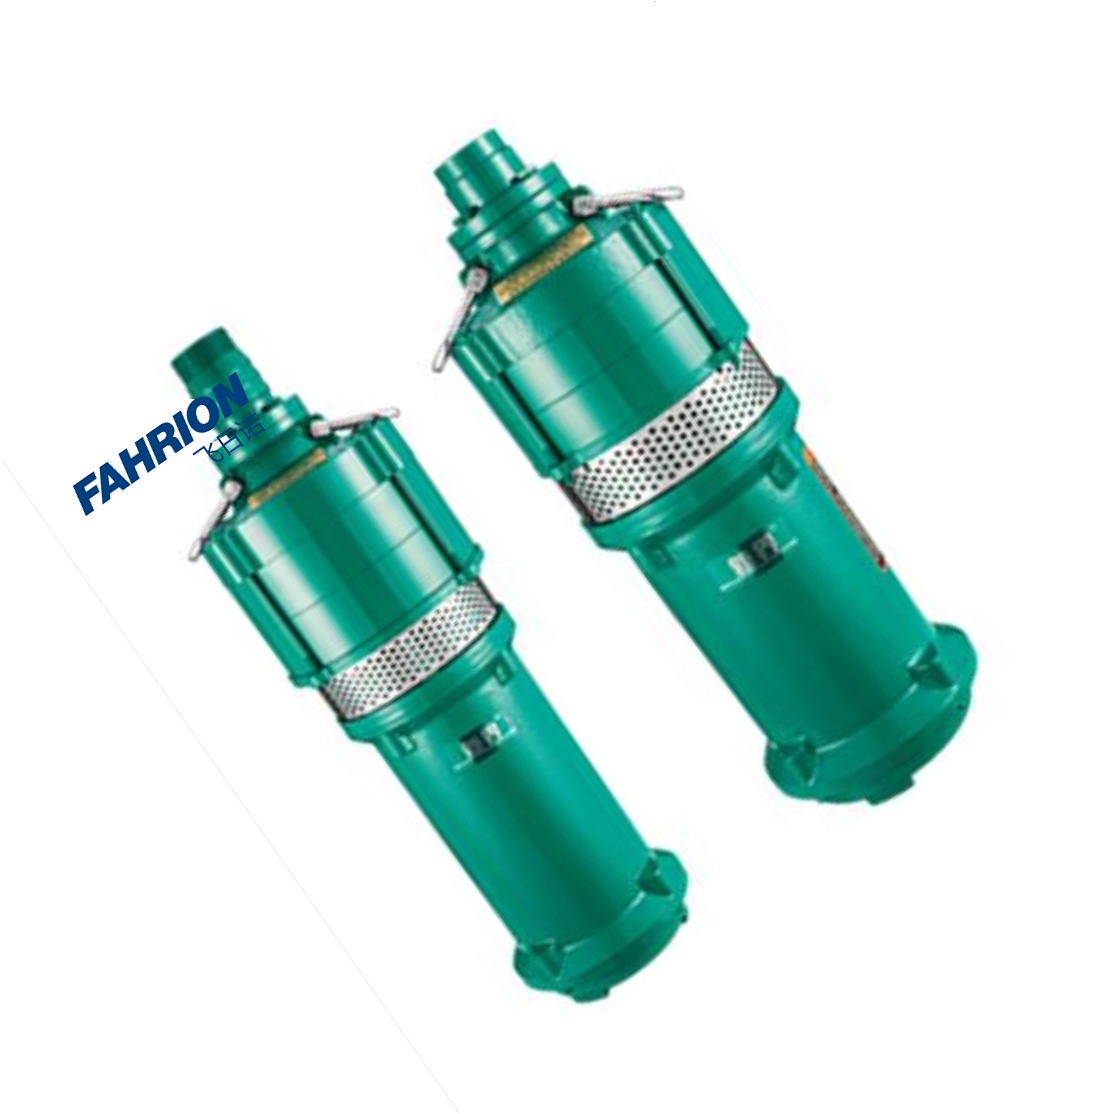 FAHRION Q(D)型干式潜水电泵 GD99-900-3168